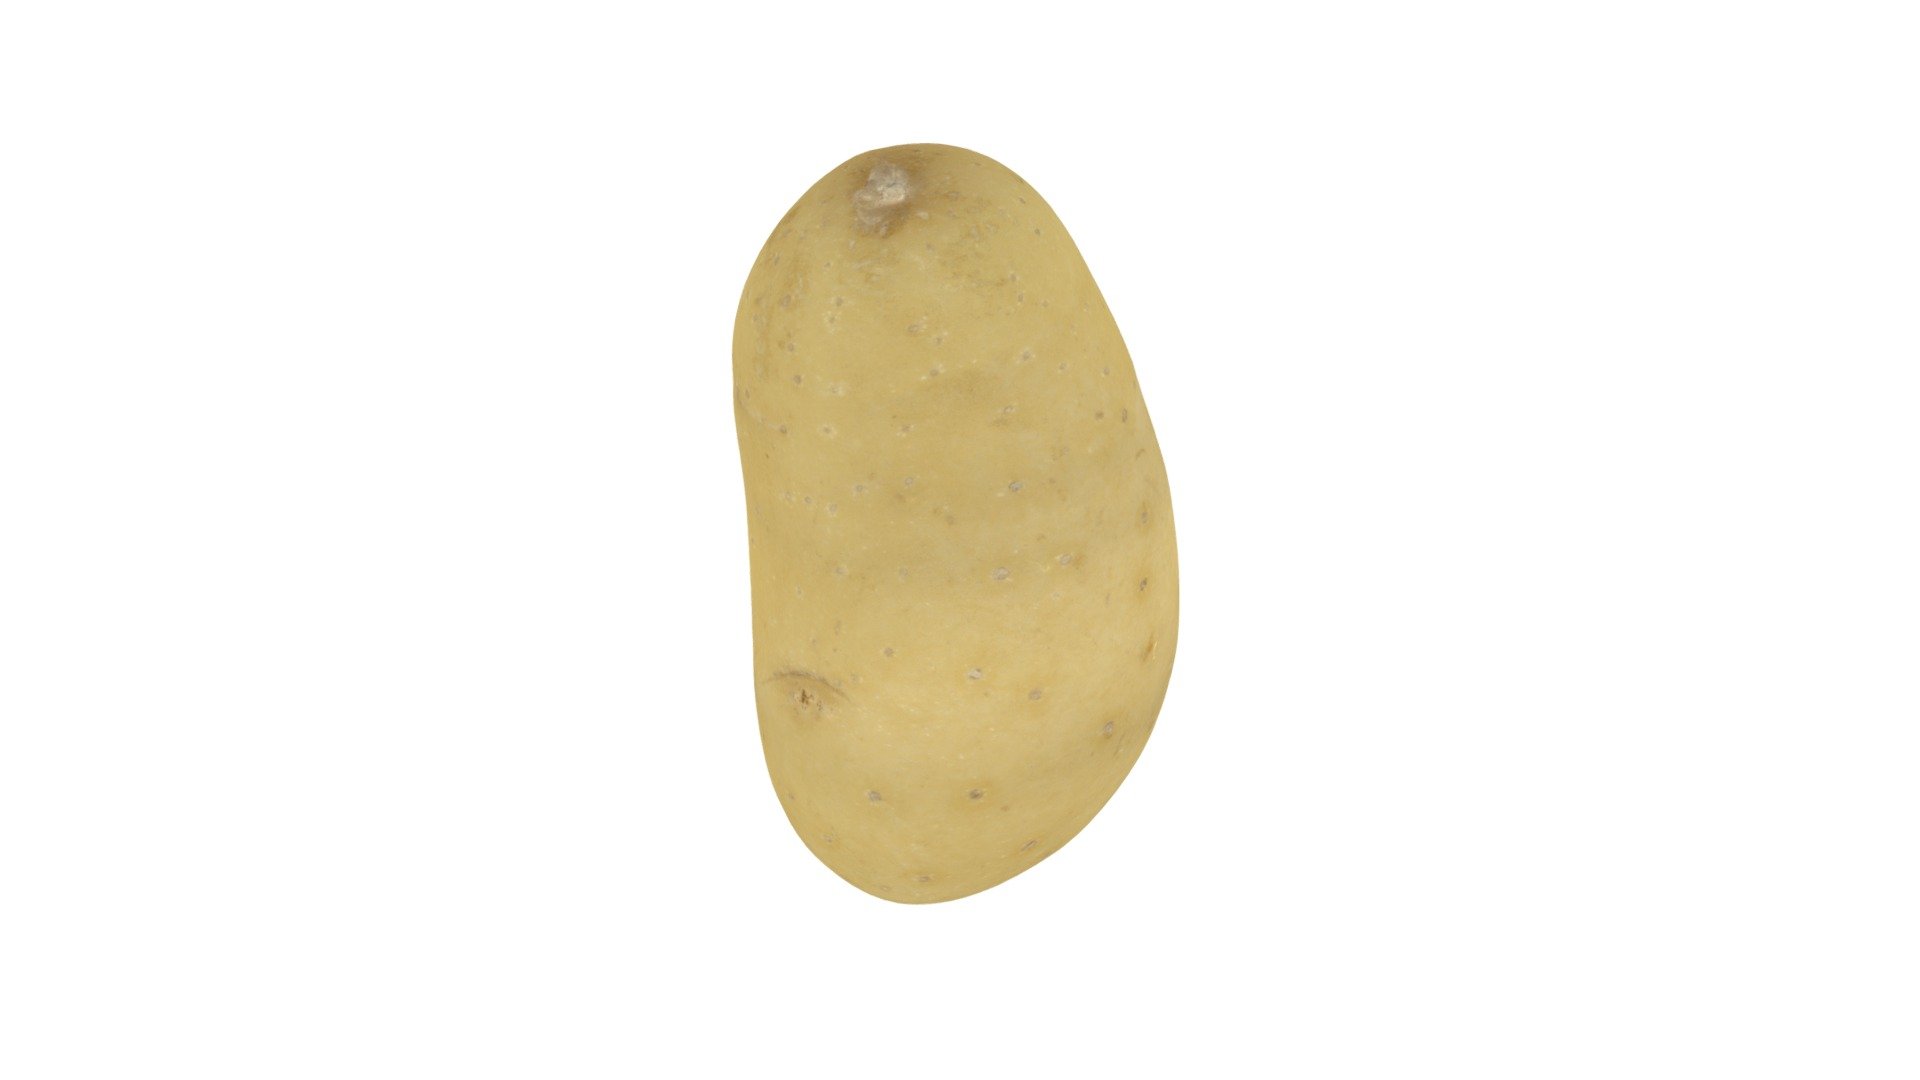 Potato #2